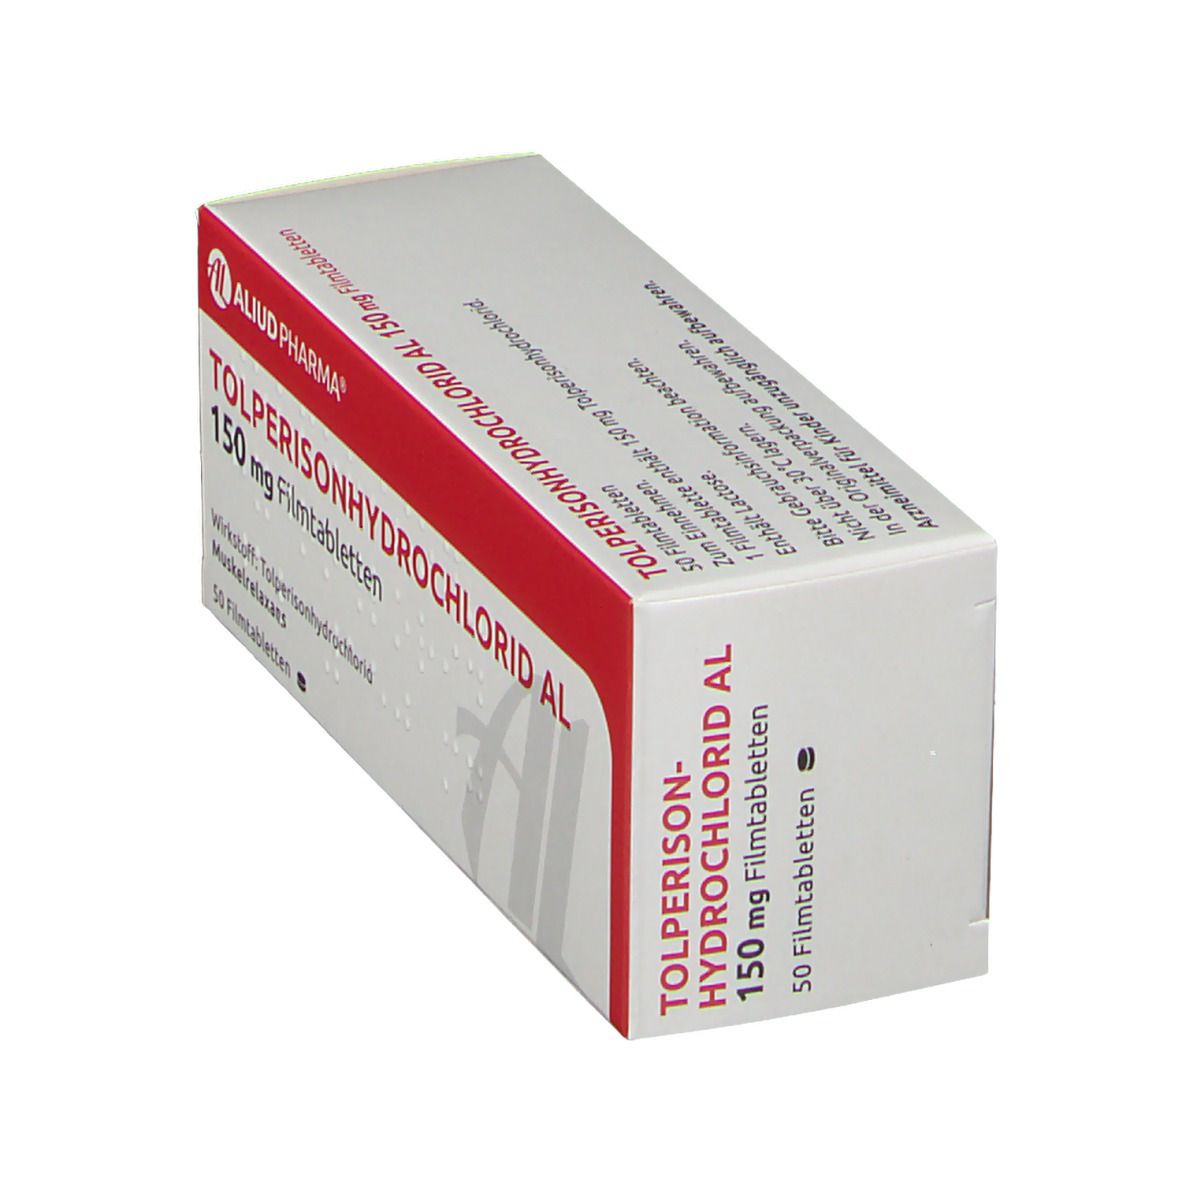 Tolperisonhydrochlorid AL 150 mg